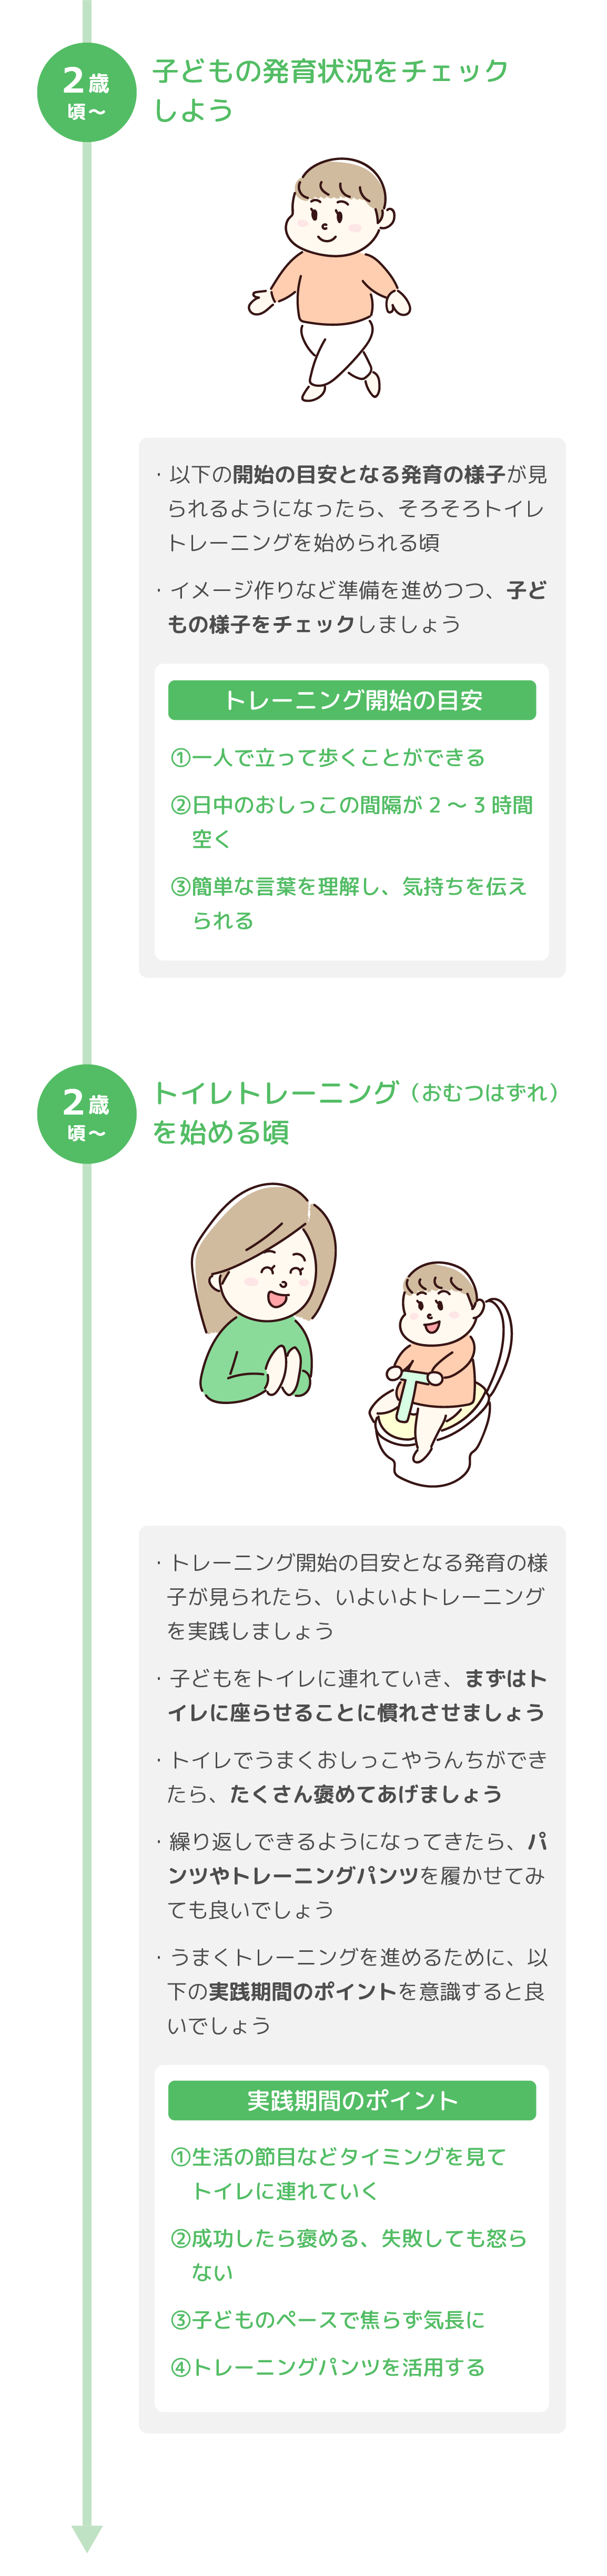 おむつ・トイレの月齢毎変化の図2